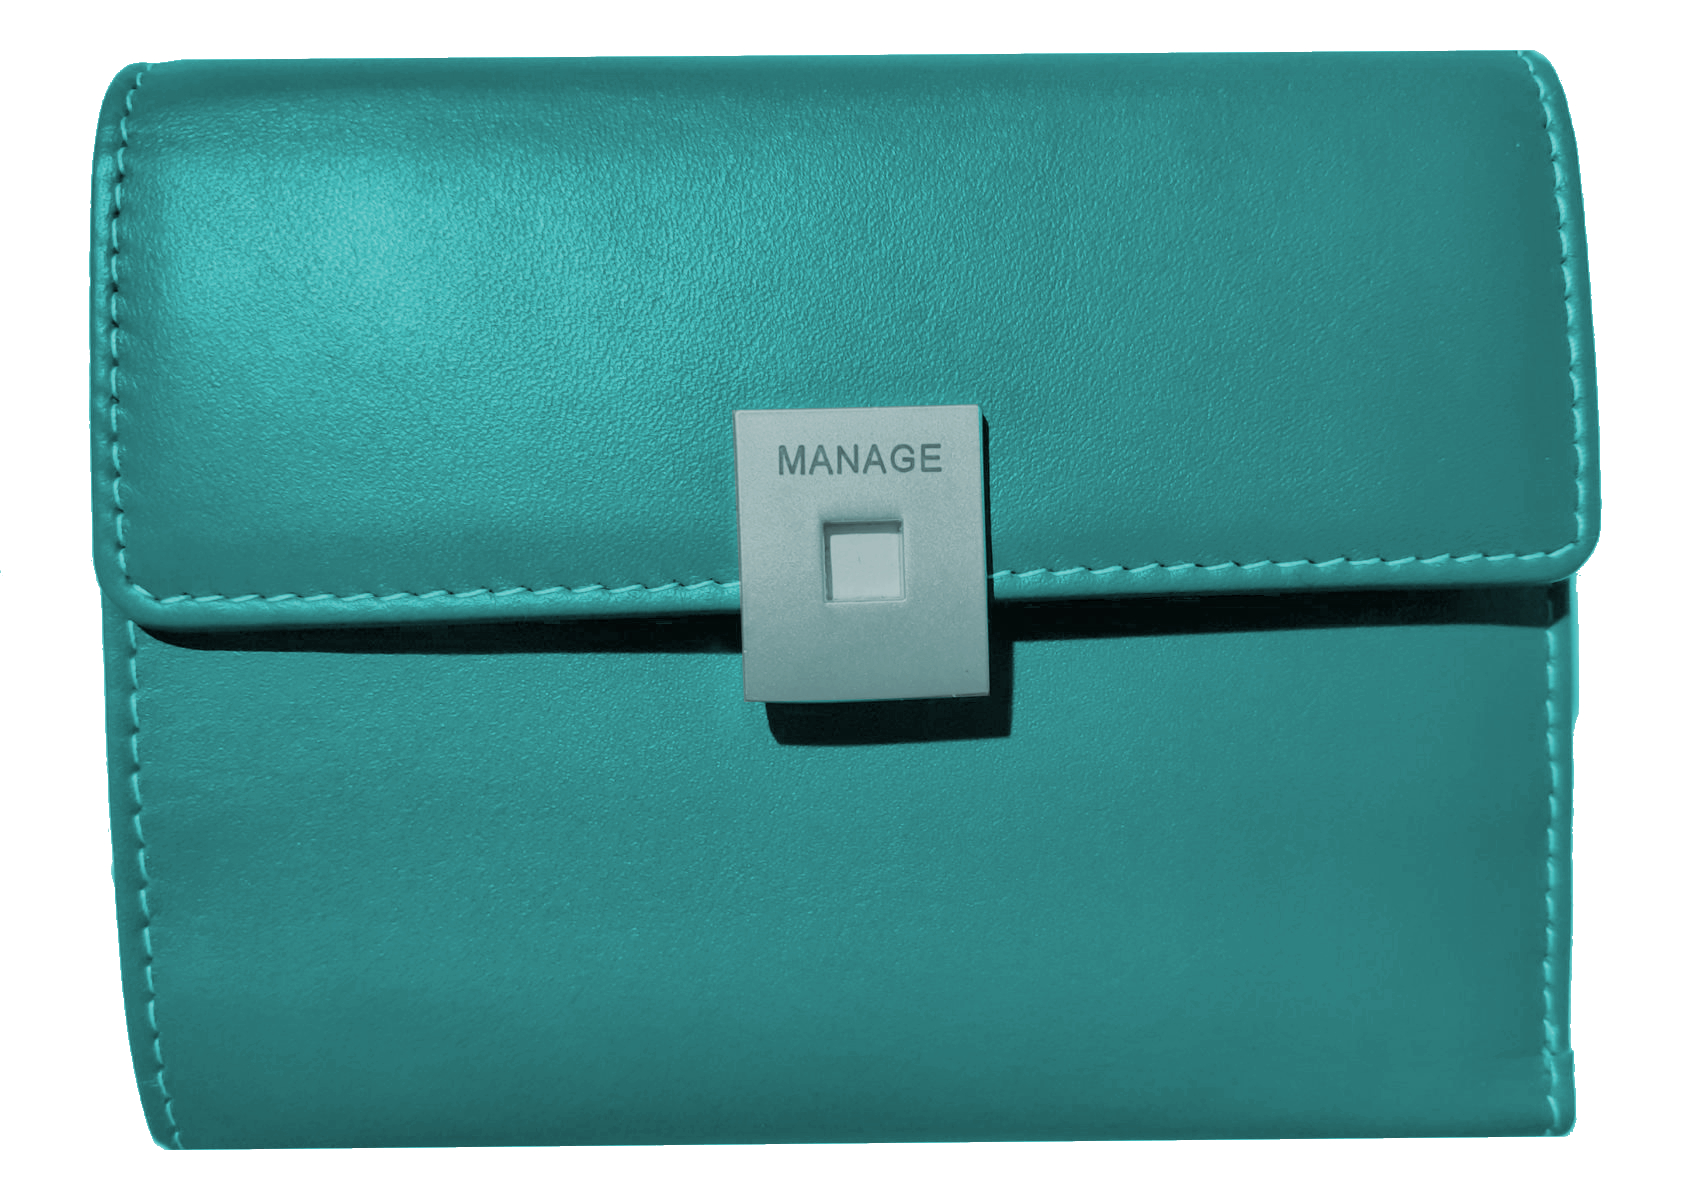 Manage 'Square' Damenkombi-Börse mit Überschlag echt Rindleder turquoise